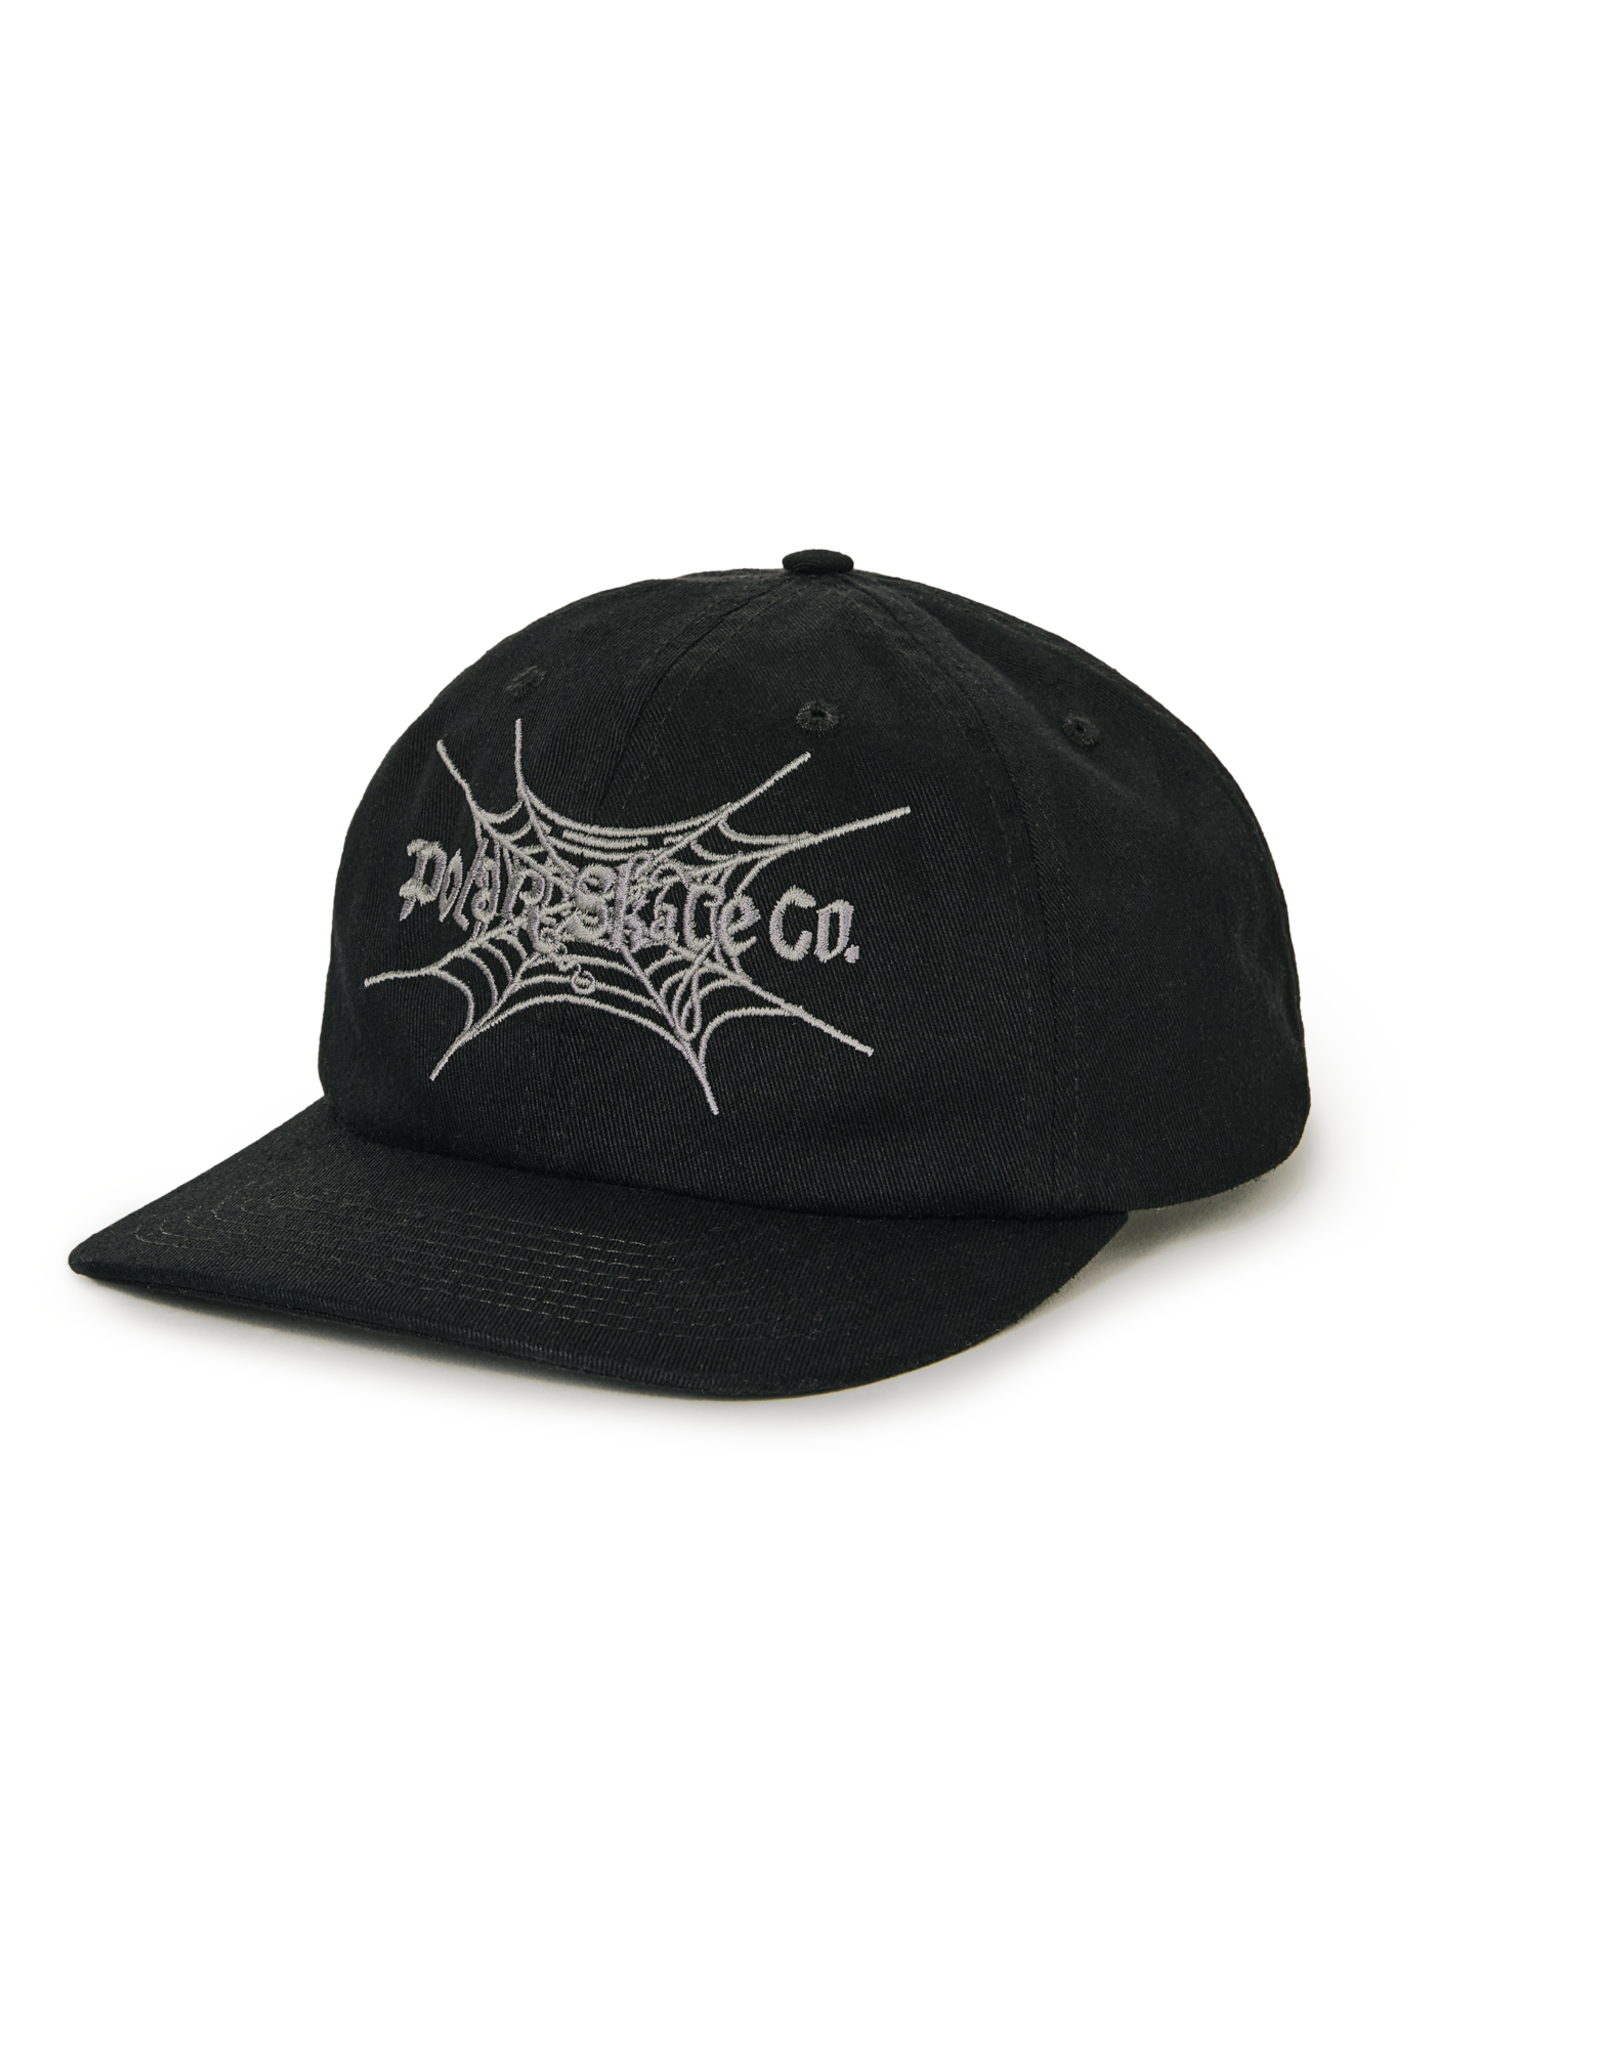 POLAR MICHAEL SPIDERWEB CAP - BLACK